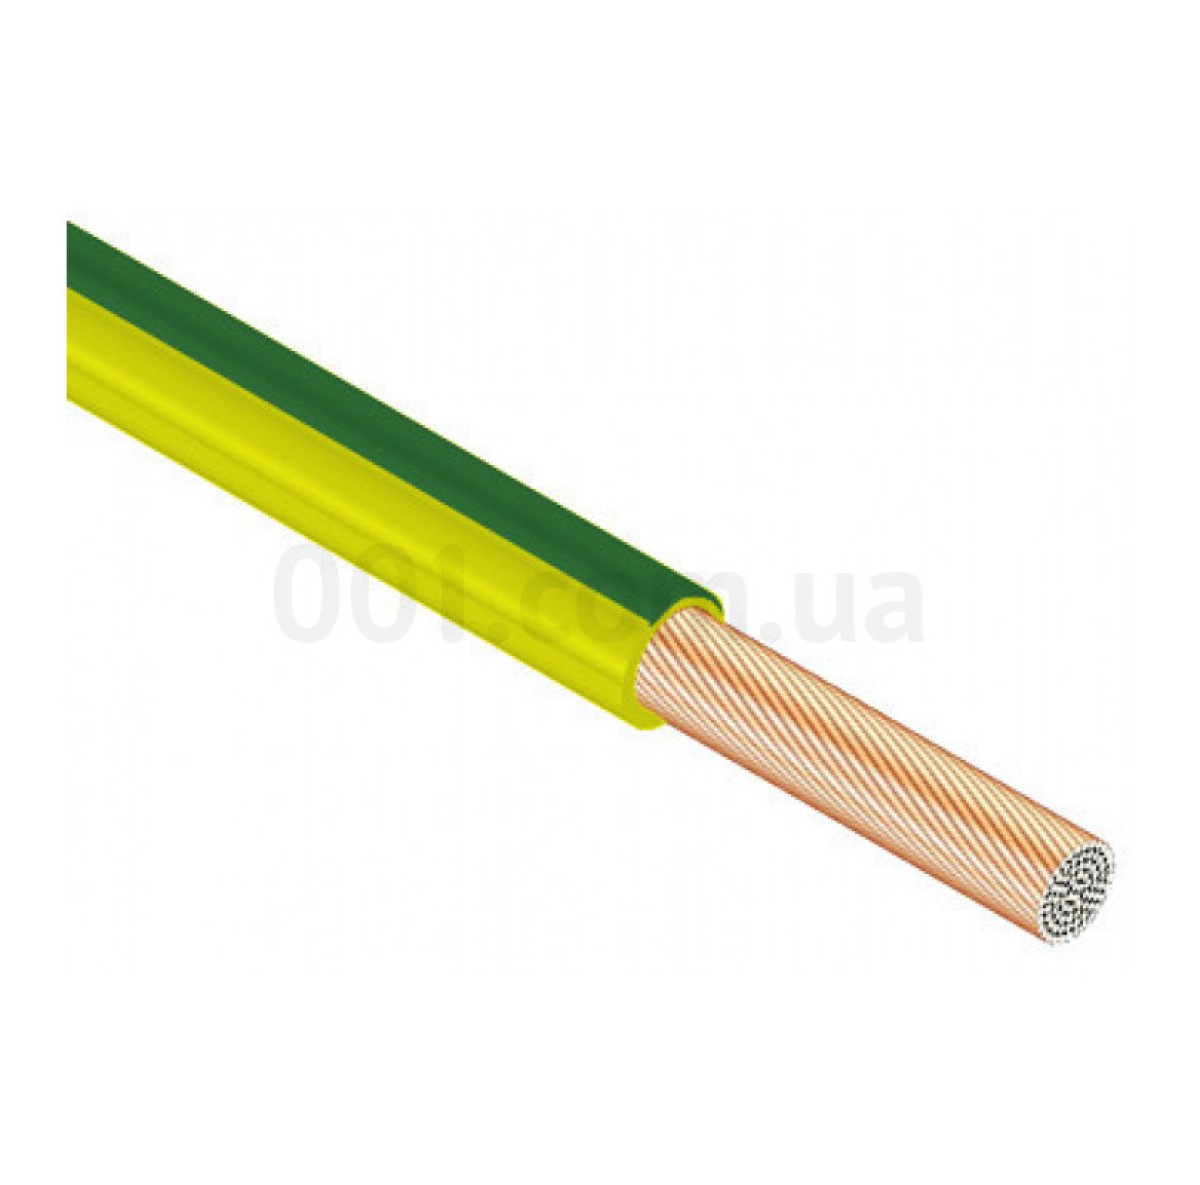 Провод установочный ПВ-3 16 мм² желто-зеленый с медными жилами (ГОСТ), ЗЗЦМ 256_253.jpg